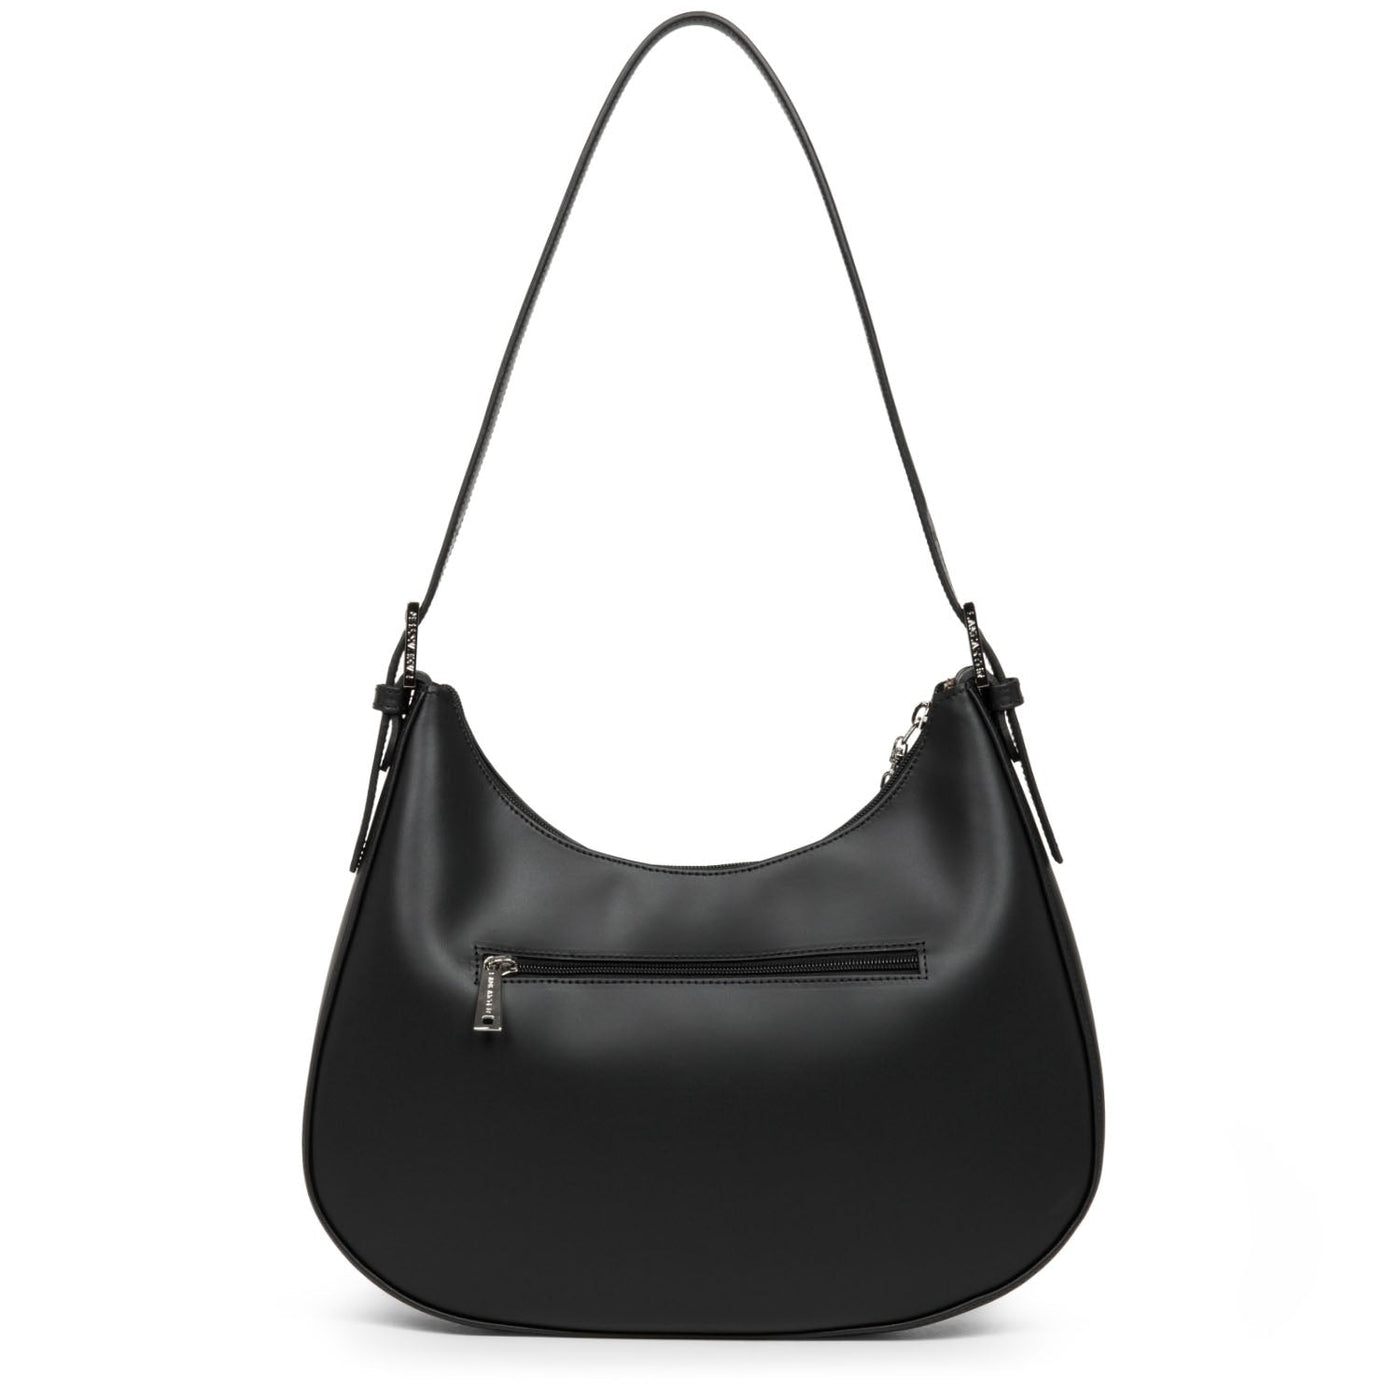 shoulder bag - smooth #couleur_noir